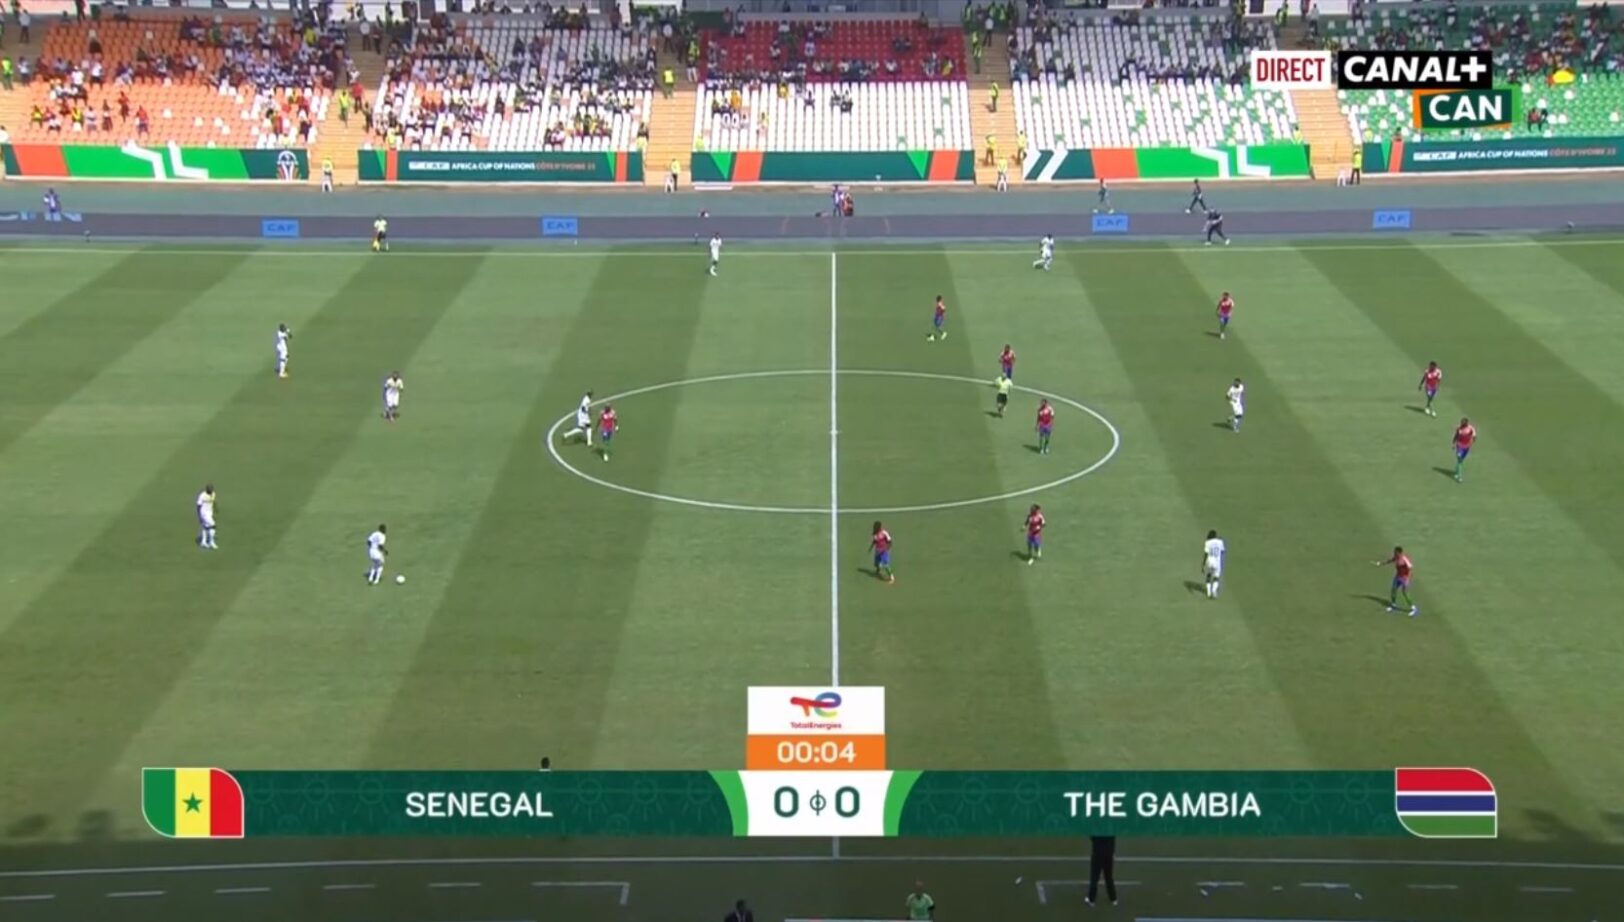 Sénégal
